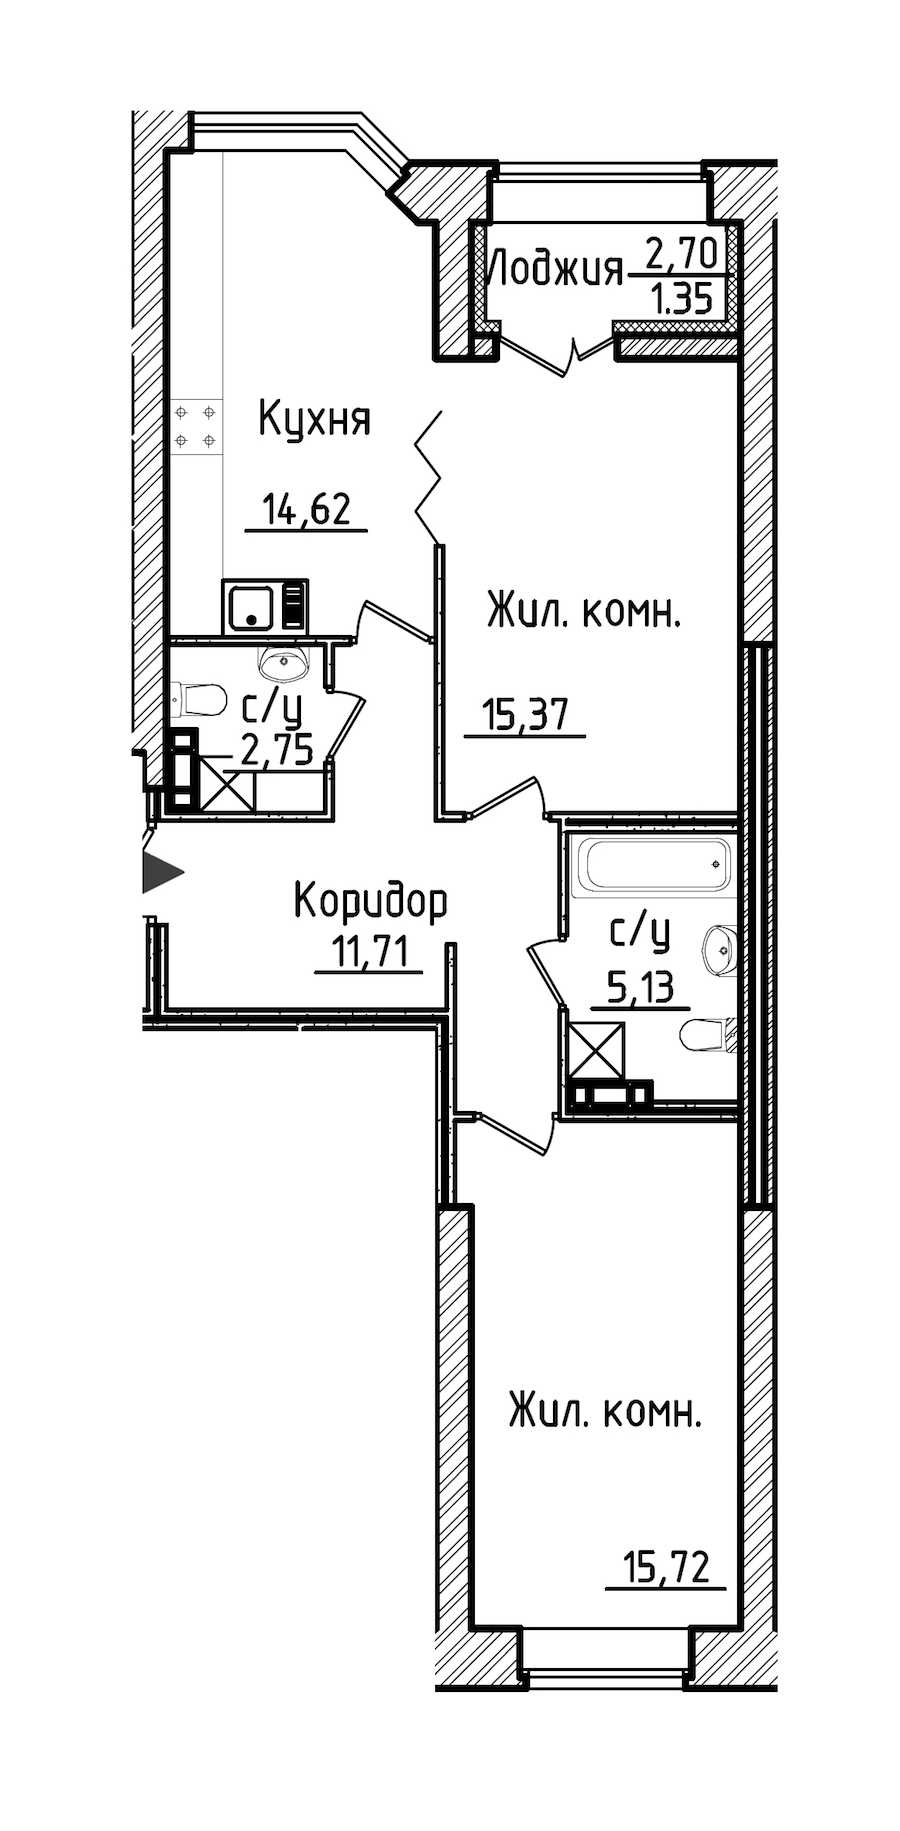 Двухкомнатная квартира в : площадь 66.65 м2 , этаж: 3 – купить в Санкт-Петербурге